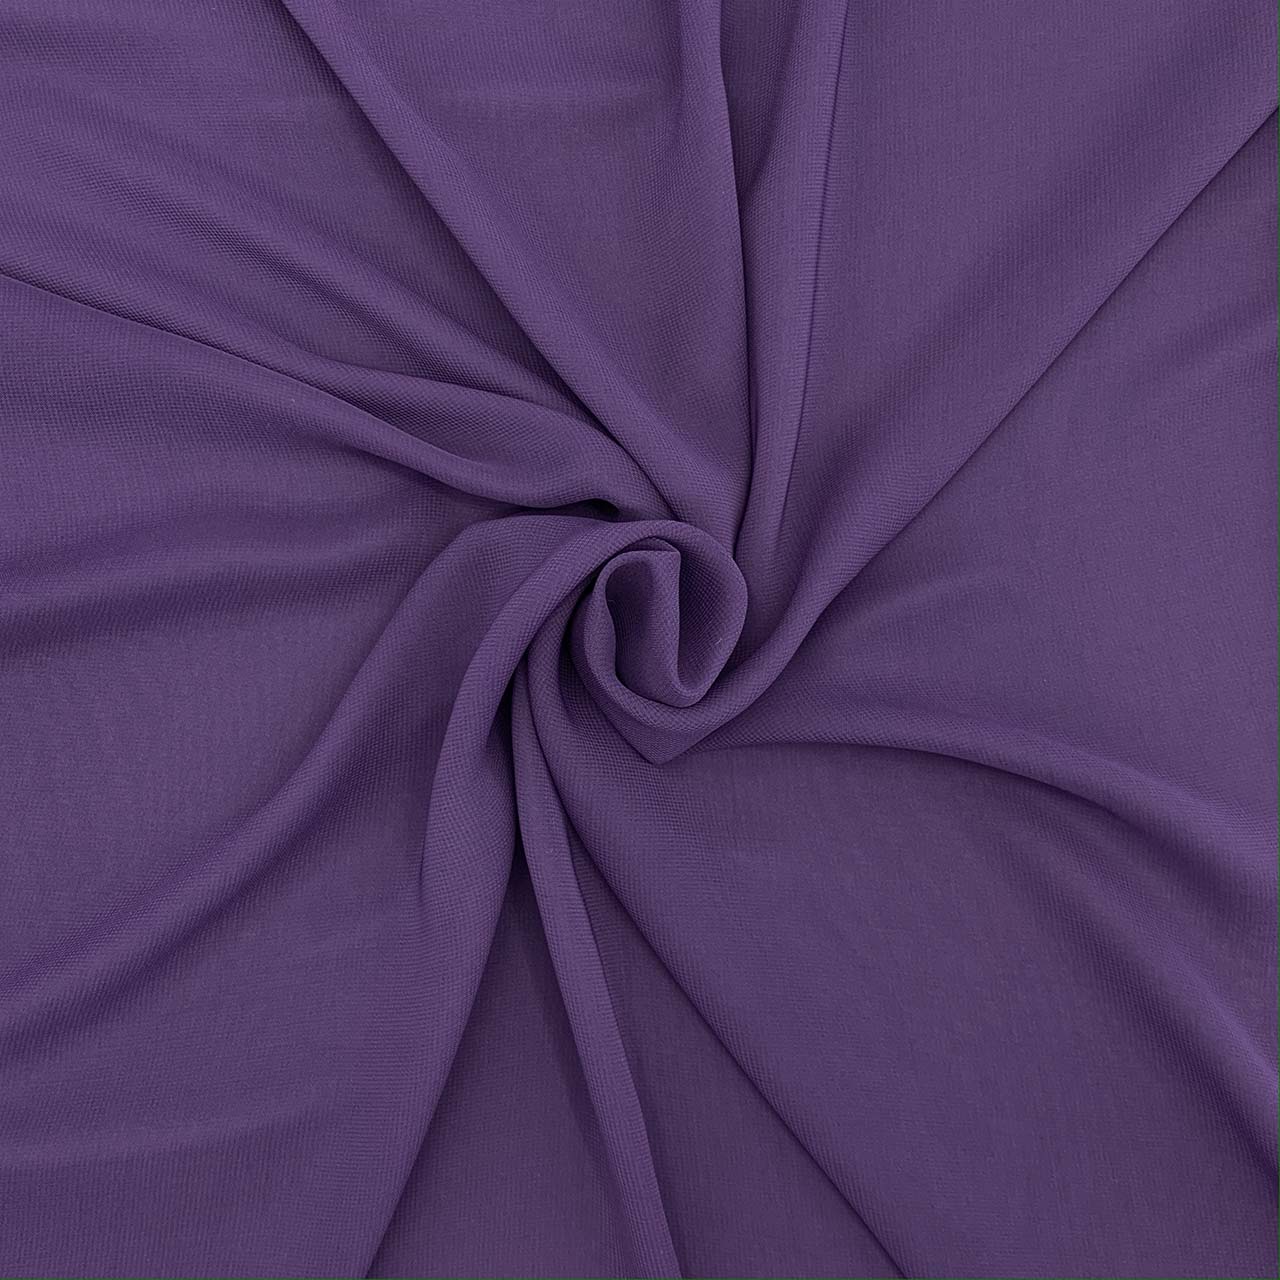 polyester chiffon royal purple fabric